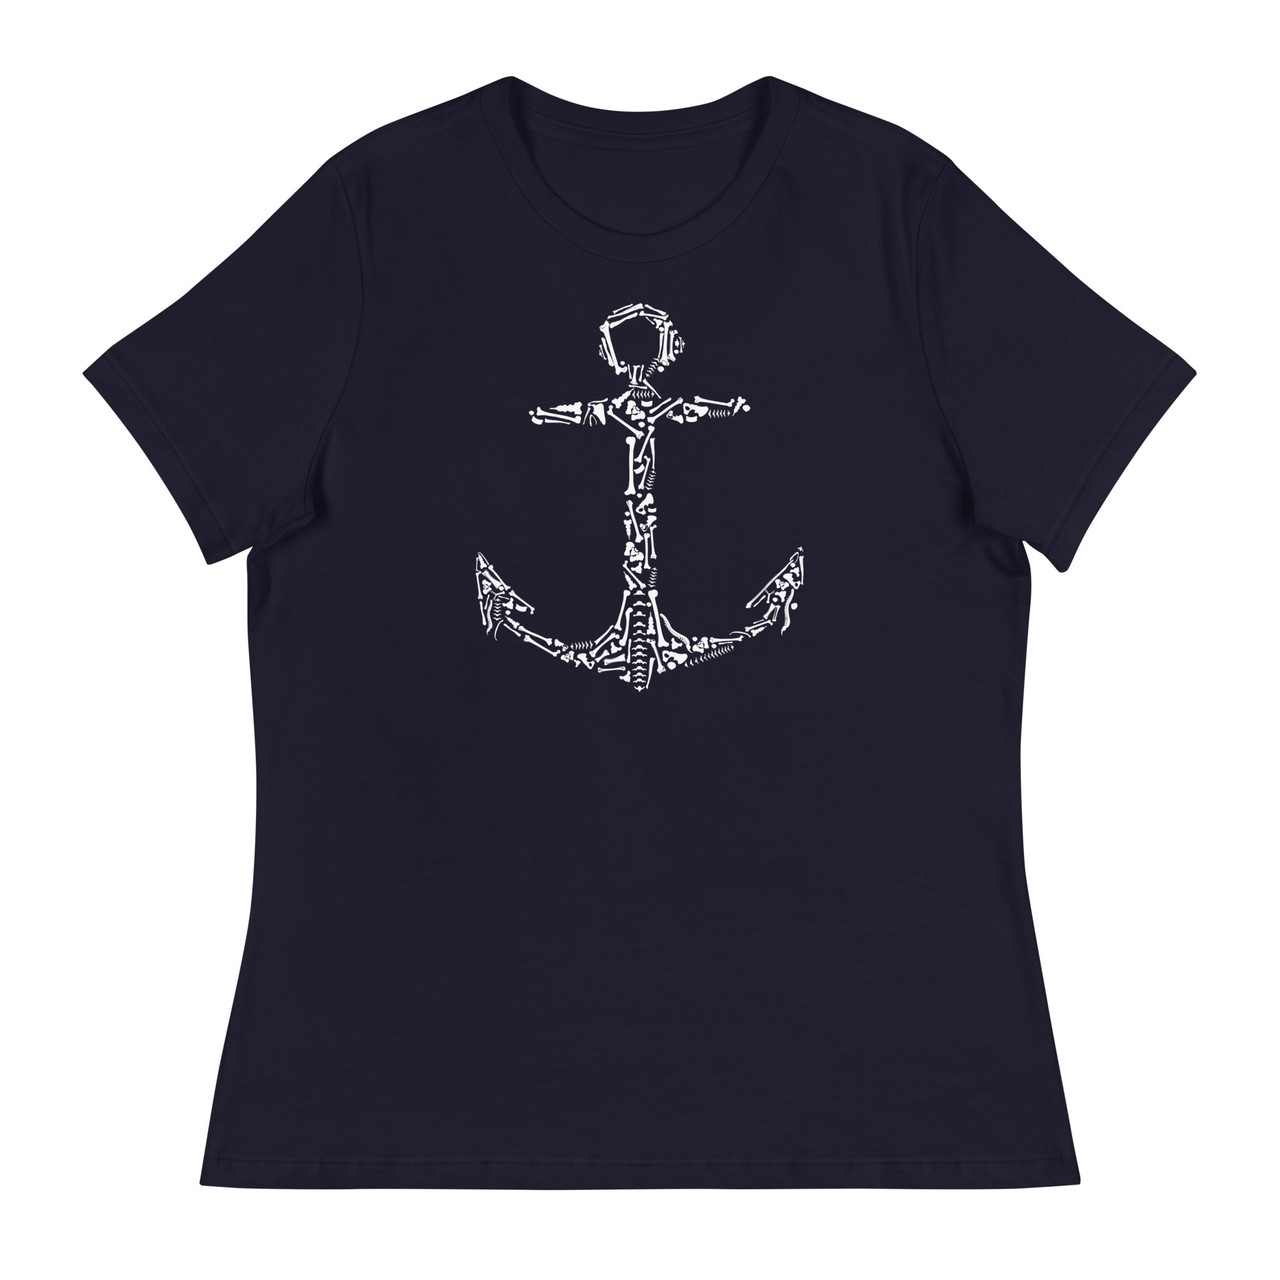 Anchor Bones Women's Relaxed T-Shirt - Bella + Canvas 6400 